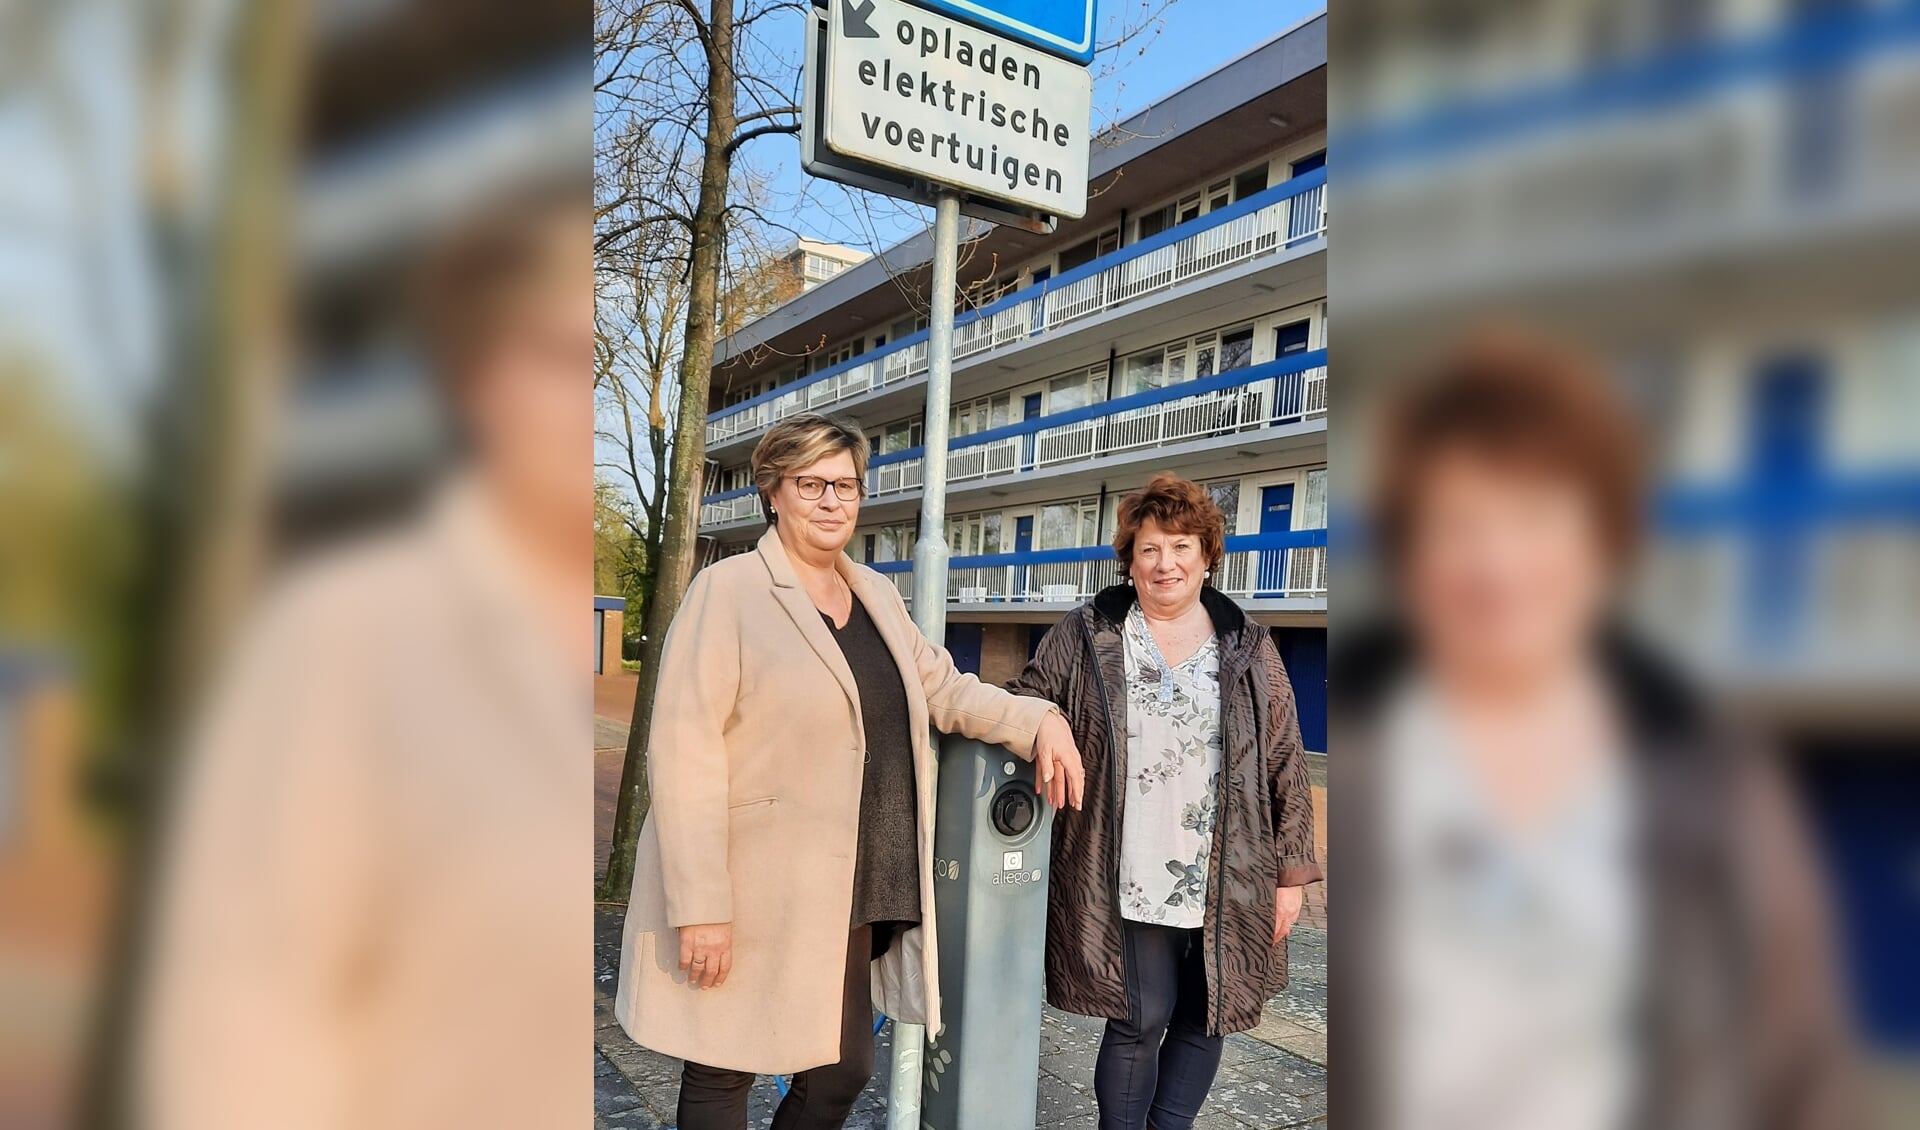 Raadslid Gonnie van Rietschoten en burgerlid Ruscha de Jong van Actief voor Amstelveen bij een laadpaal voor elektrische voertuigen.